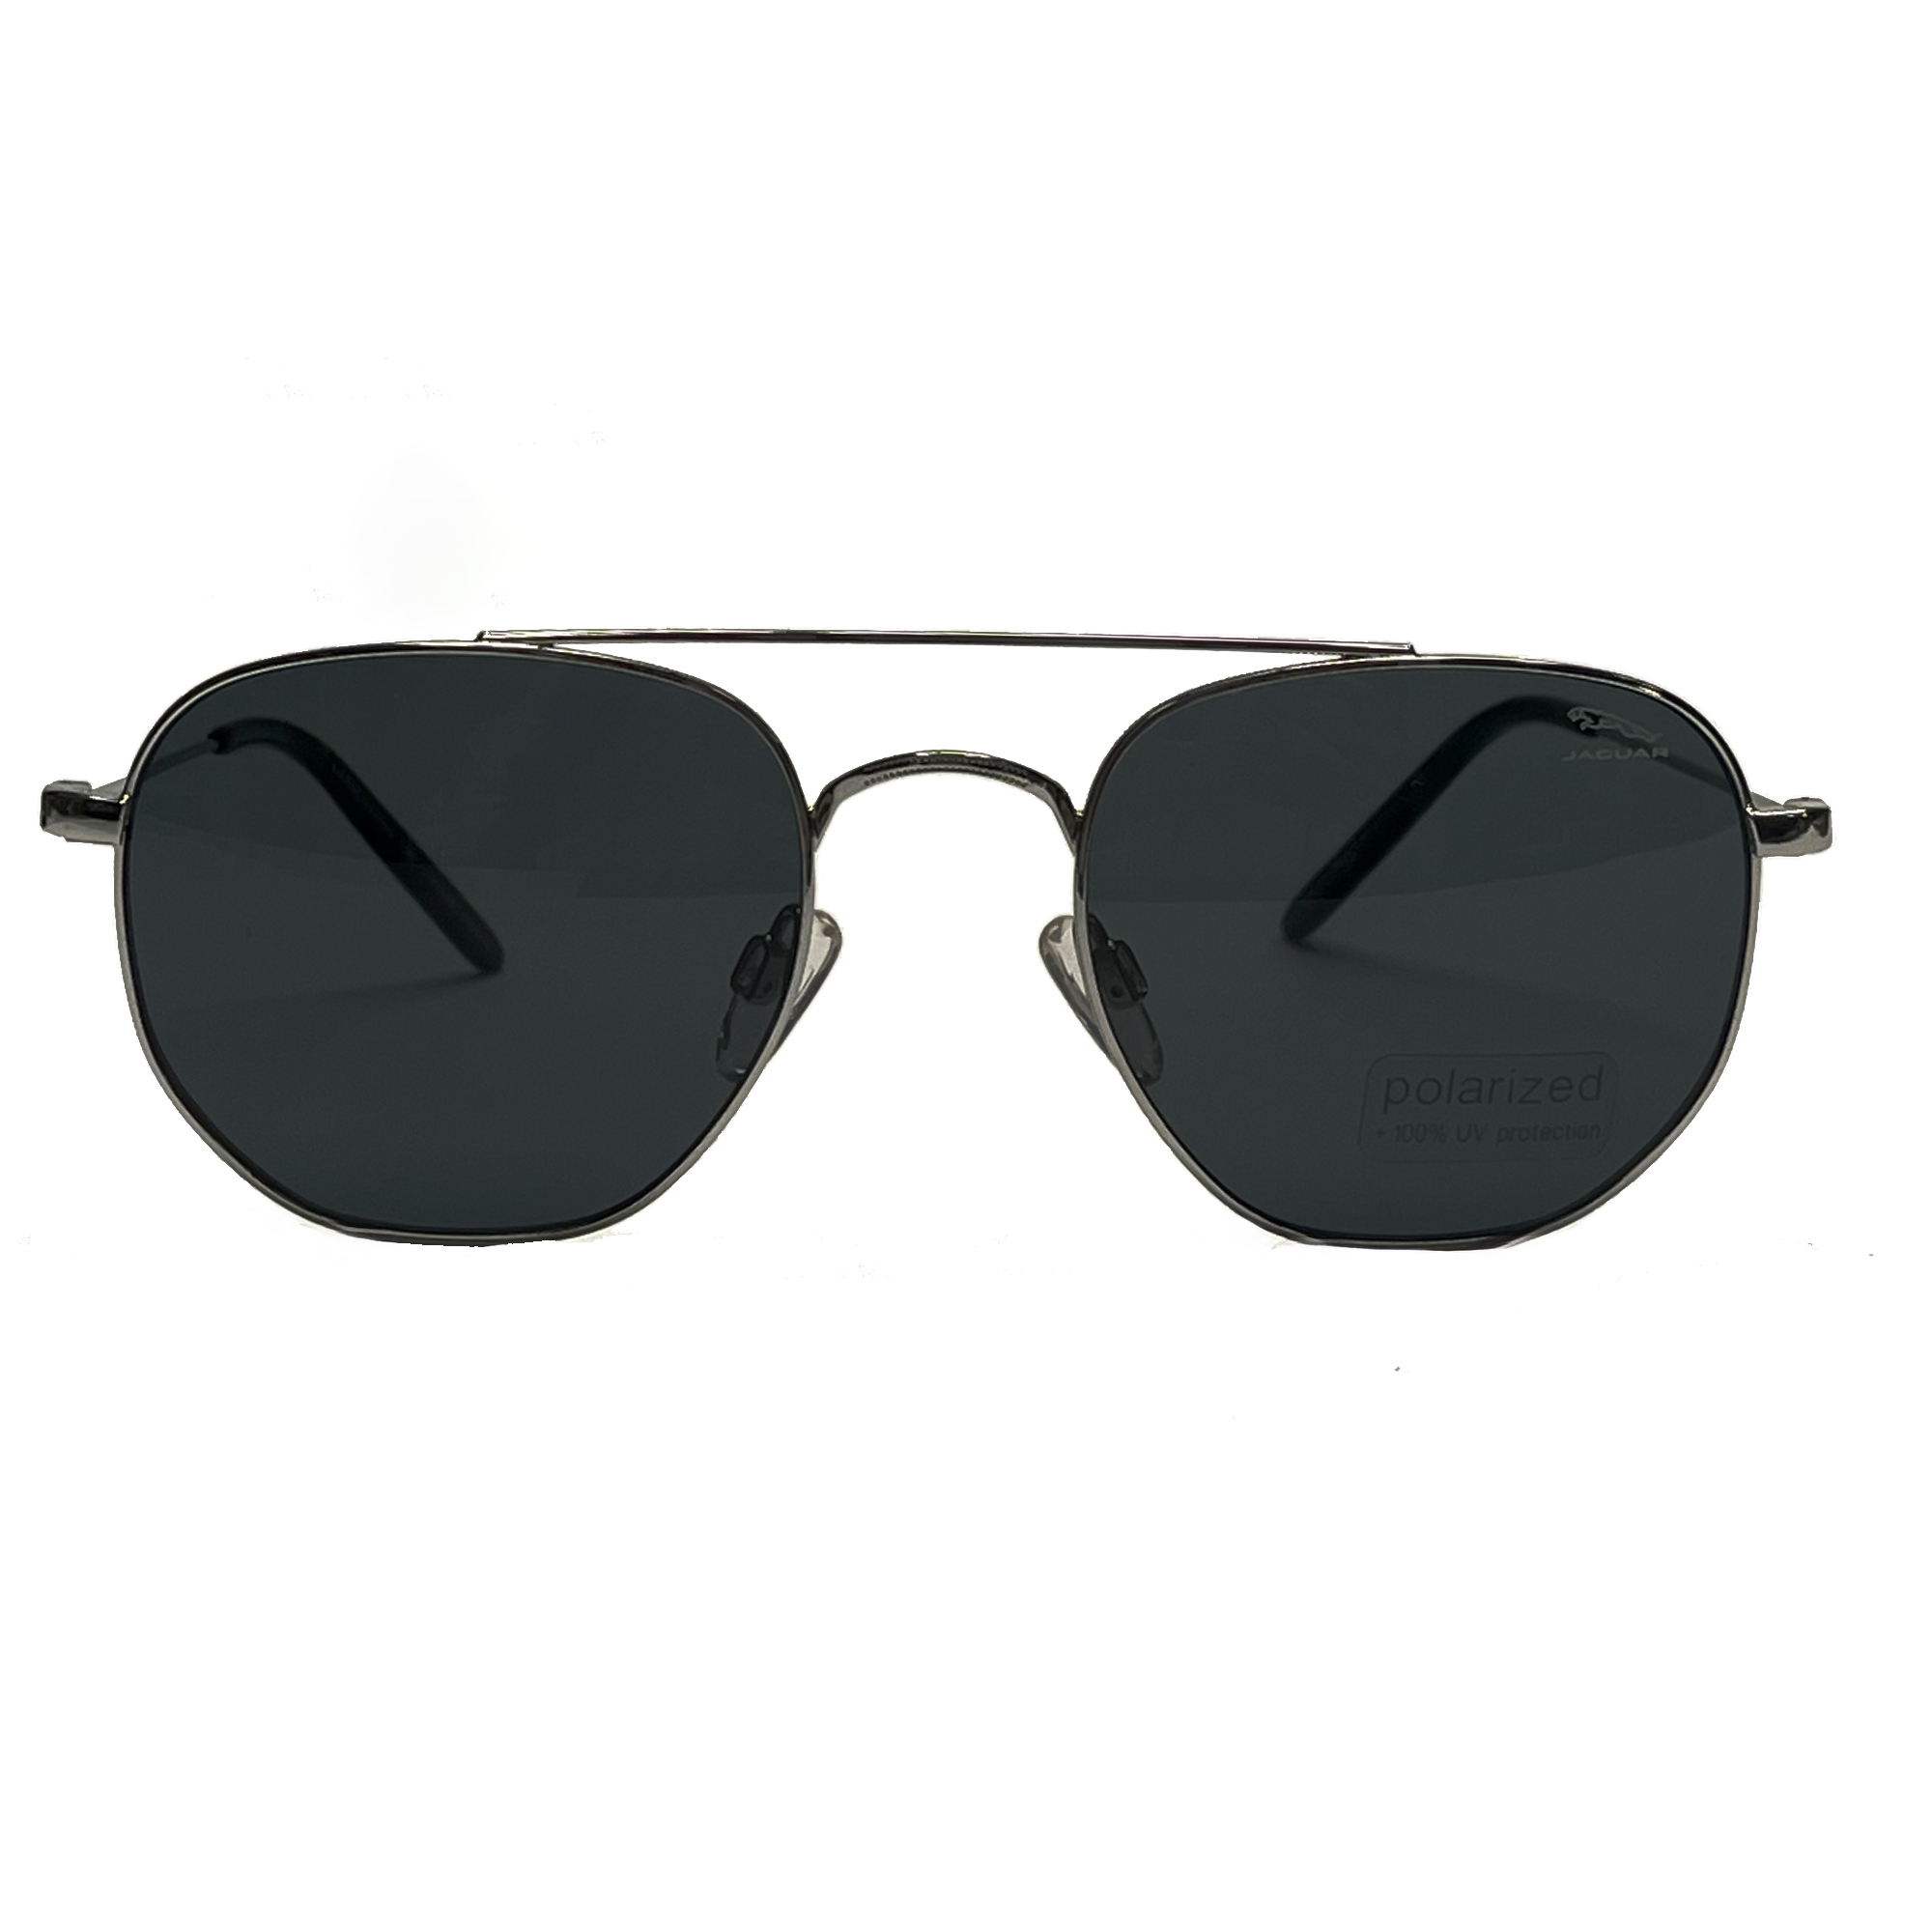 نکته خرید - قیمت روز عینک آفتابی جگوار مدل Md.37454-1100 خرید